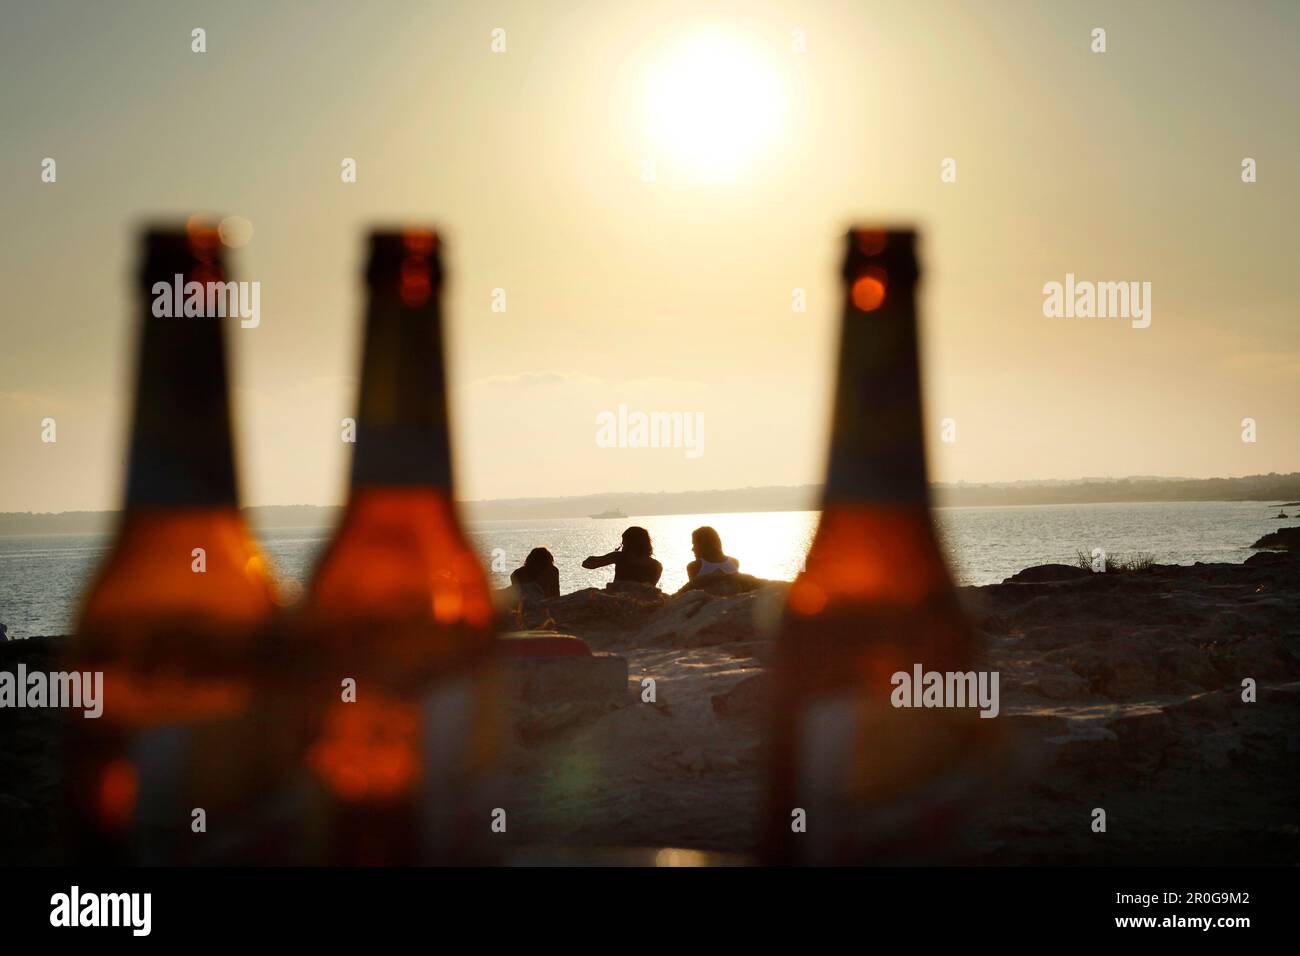 Bierflaschen, 3 Personen am Strand, Strandbar Pirata Bus, Formentera, Balearen, Spanien Stockfoto